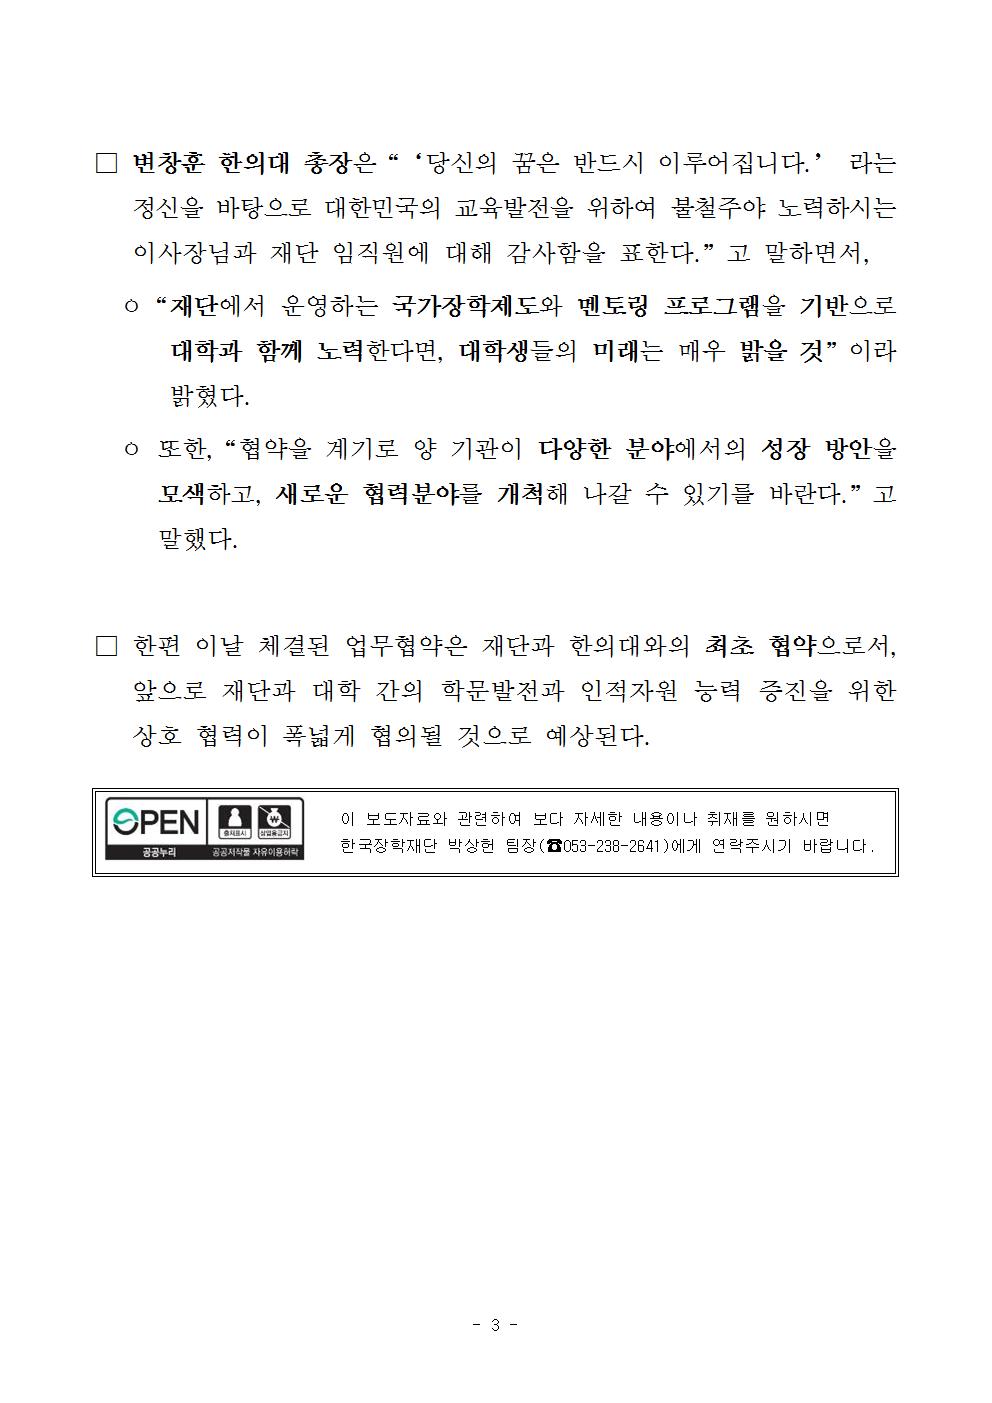 09-20(수)[보도자료] 한국장학재단, 대구한의대학교와 MOU 체결003.jpg